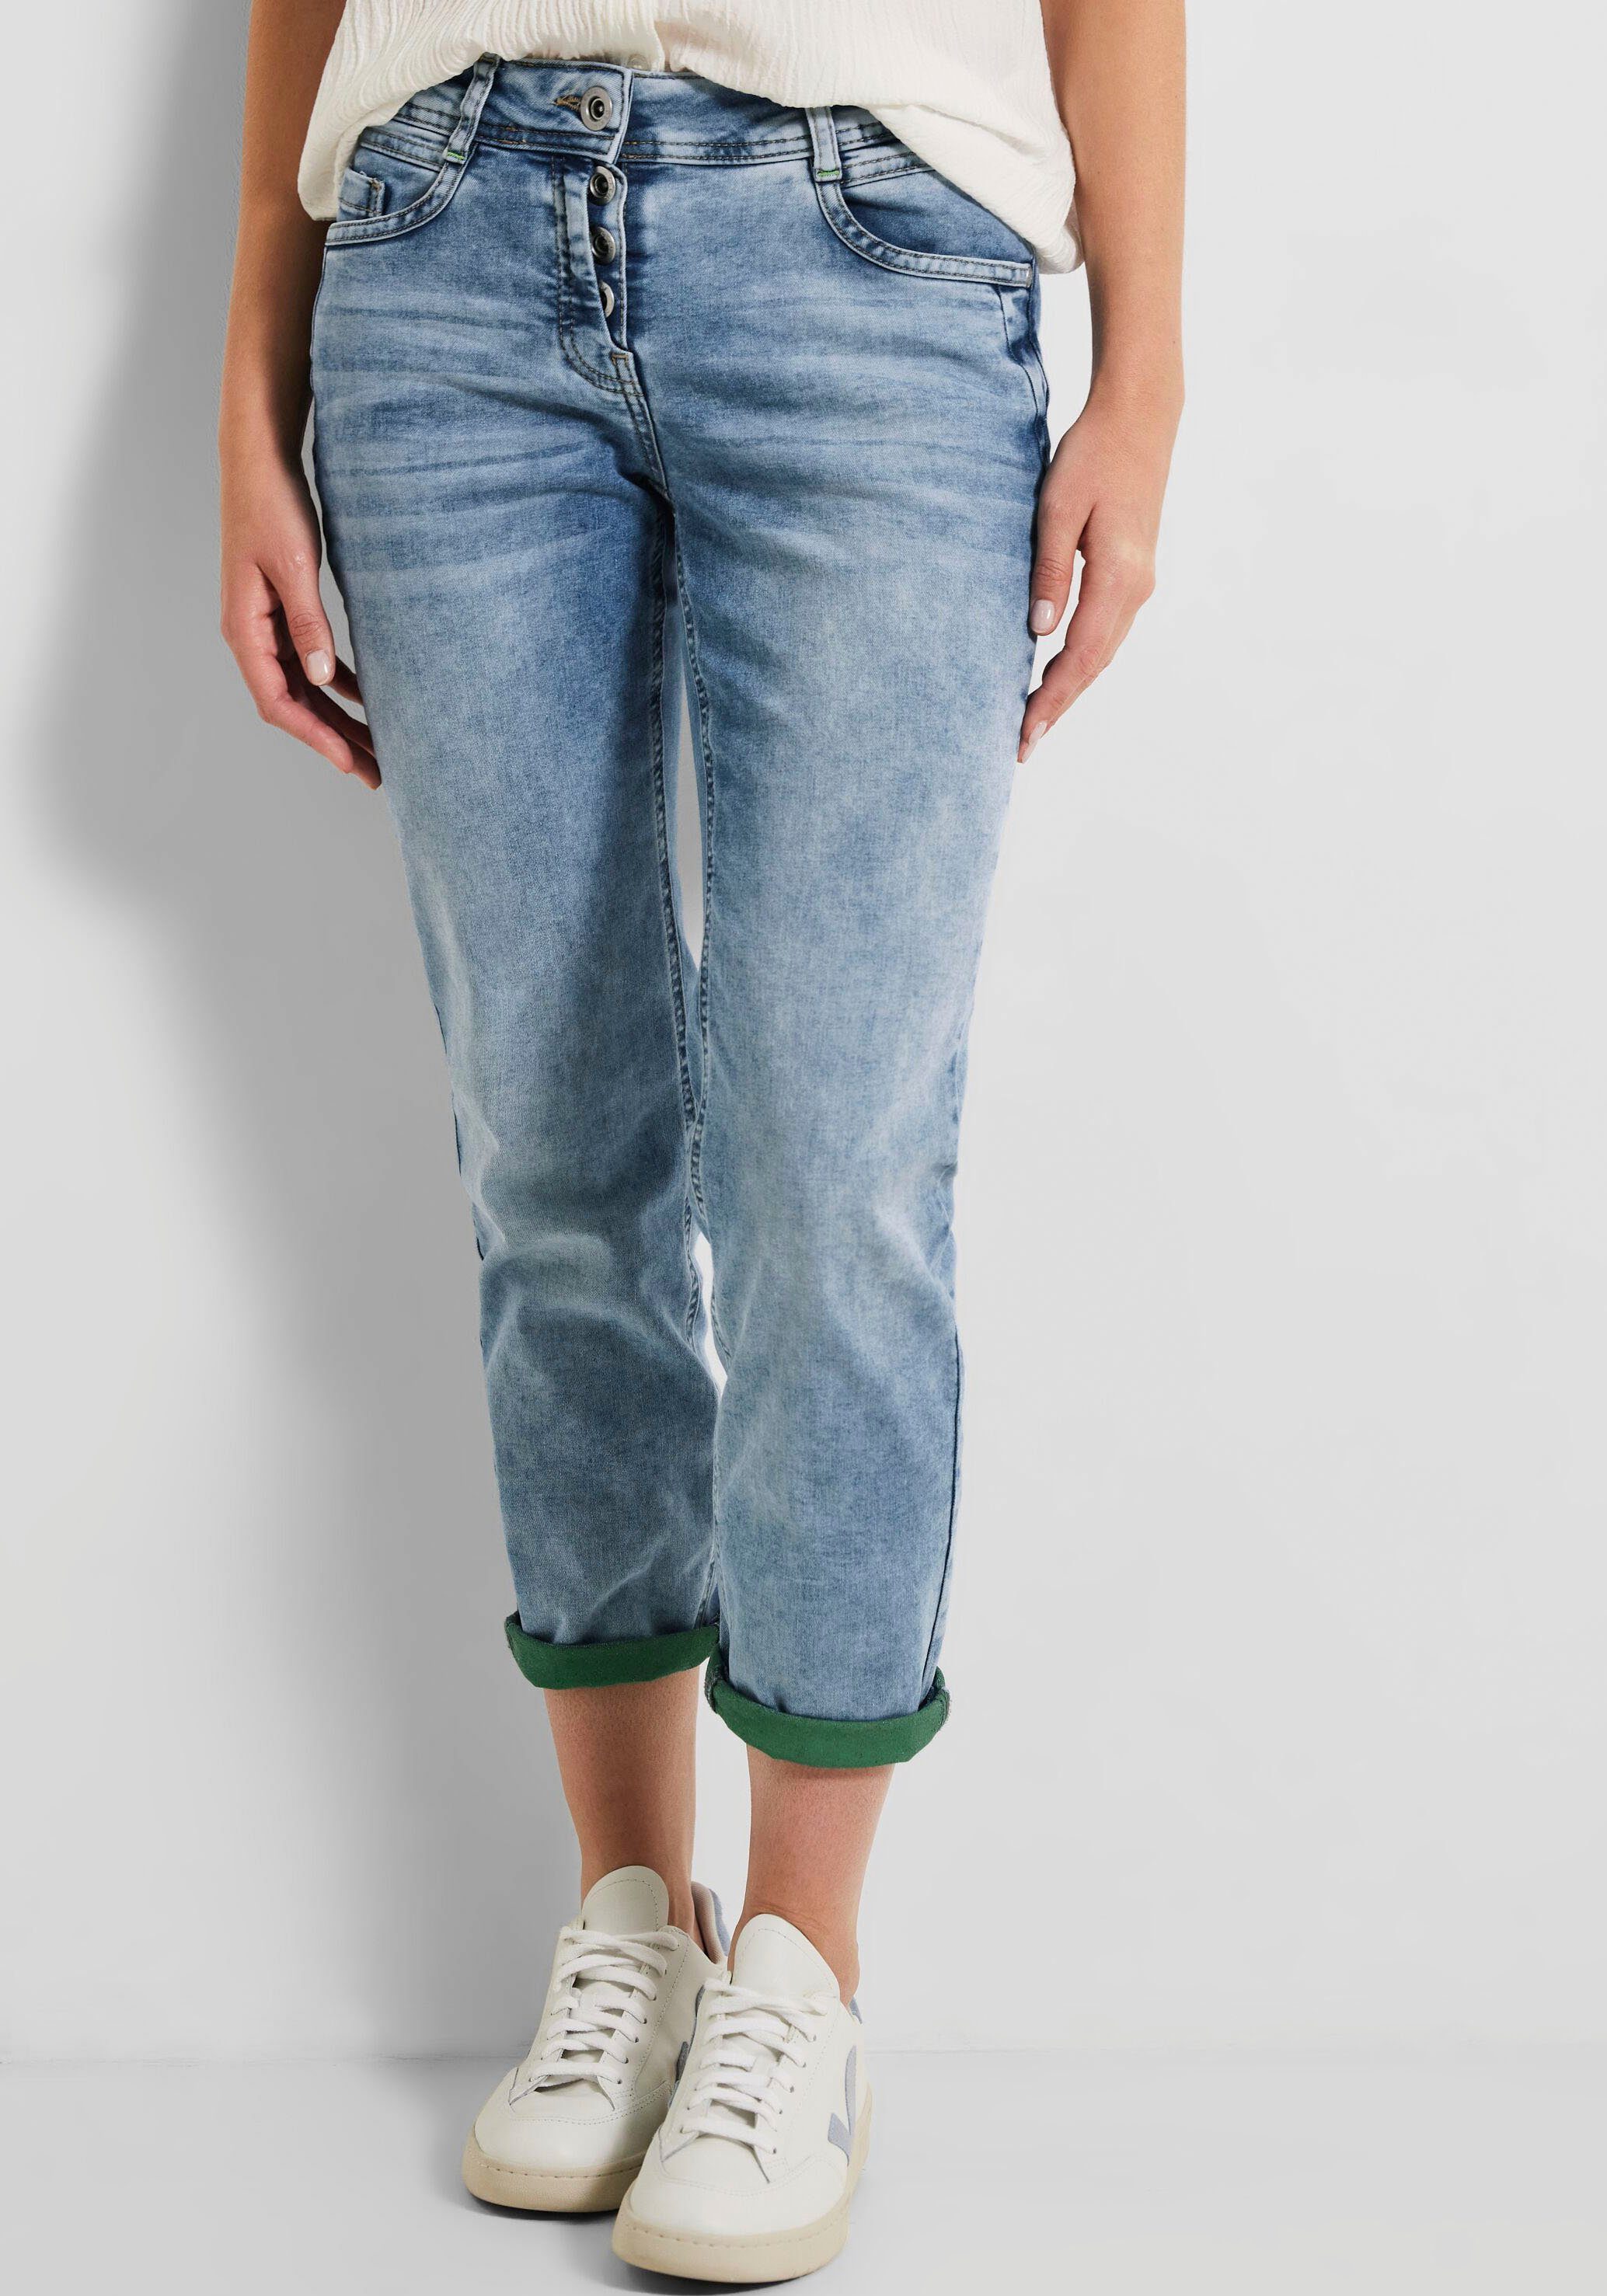 Cecil 7/8-Jeans in Used-Optik, Basic 7/8 Jeans Toronto von CECIL,  Denimstyle Hose in einer hellen Waschung